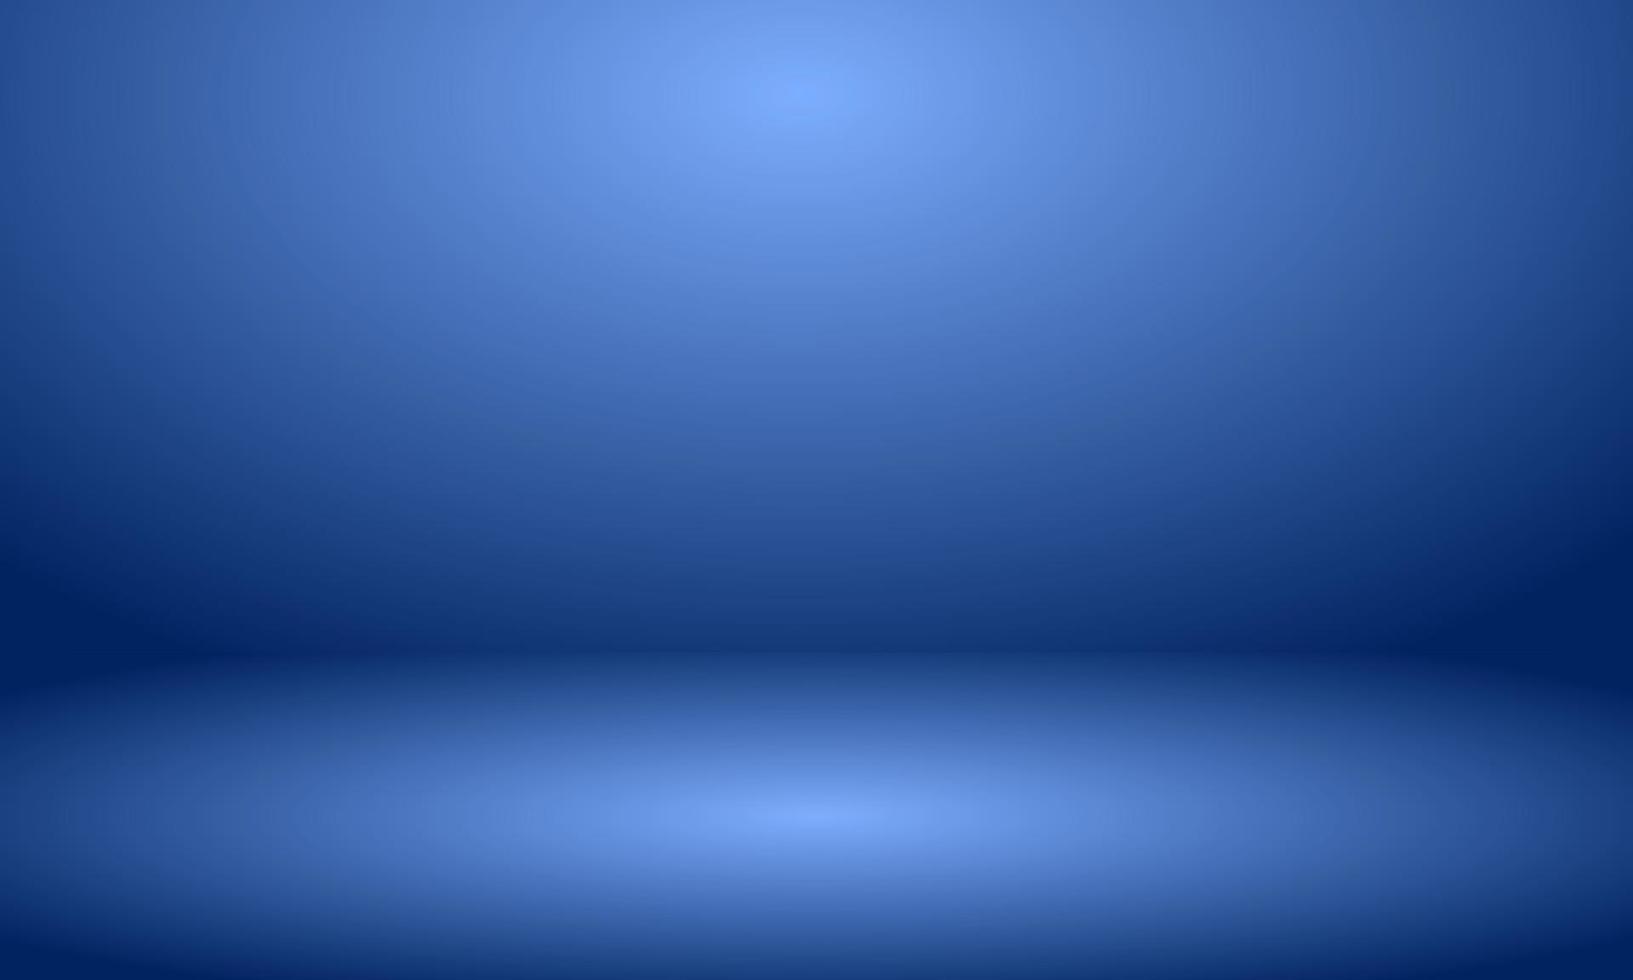 Abbildung blauer Raum 3D-Hintergrund vektor